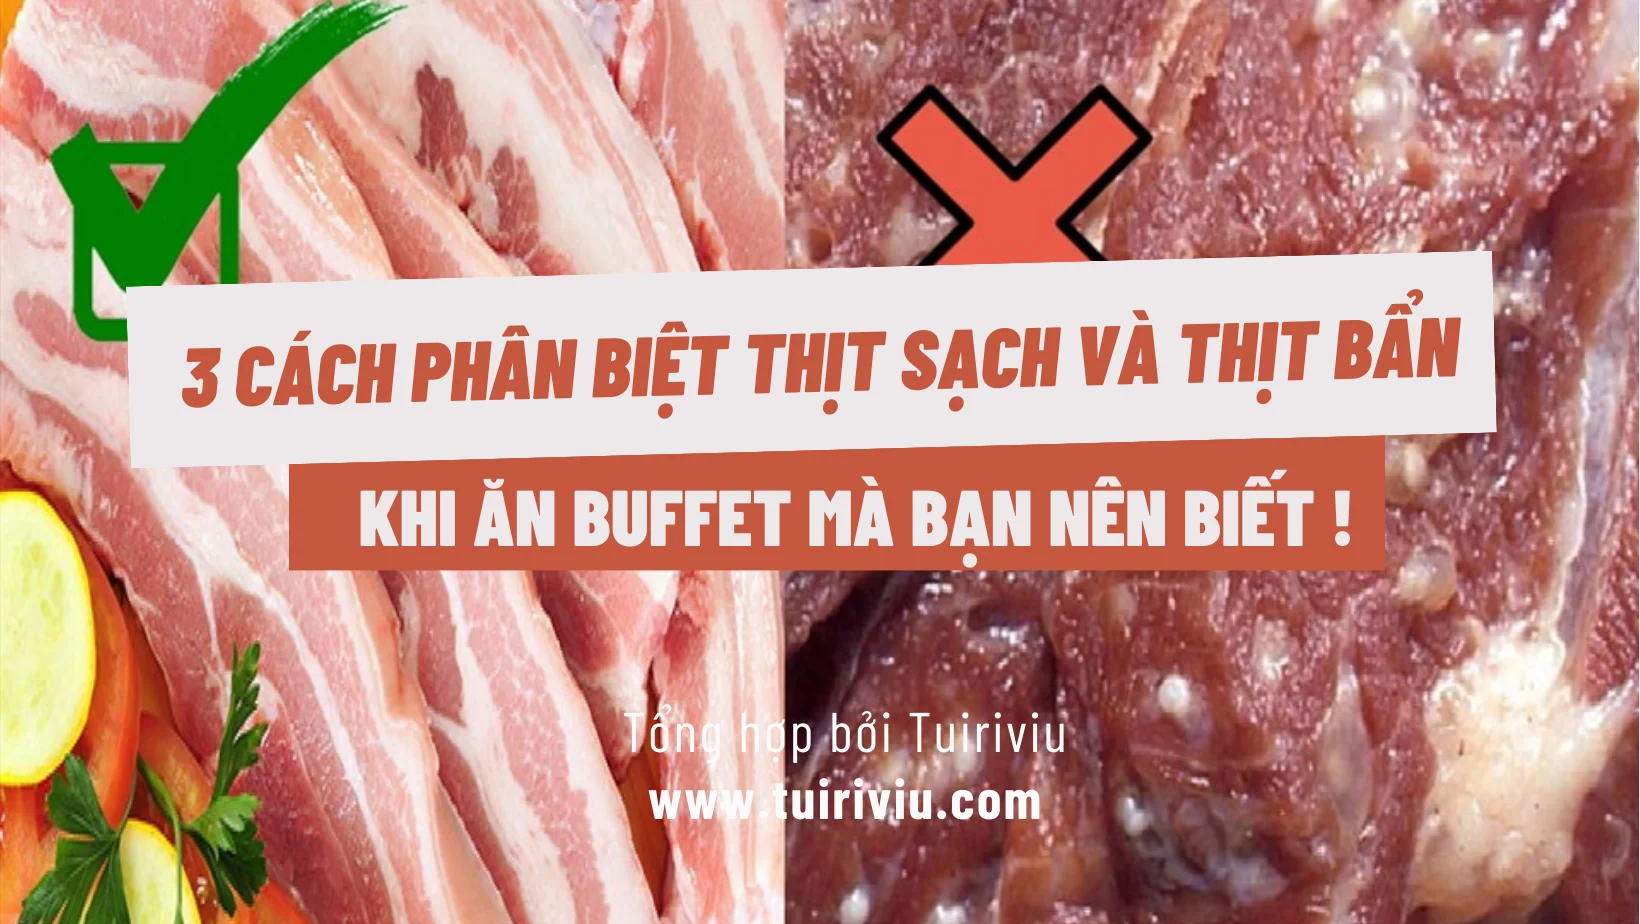 3 cách phân biệt thịt sạch, thịt bẩn khi ăn buffet giá rẻ